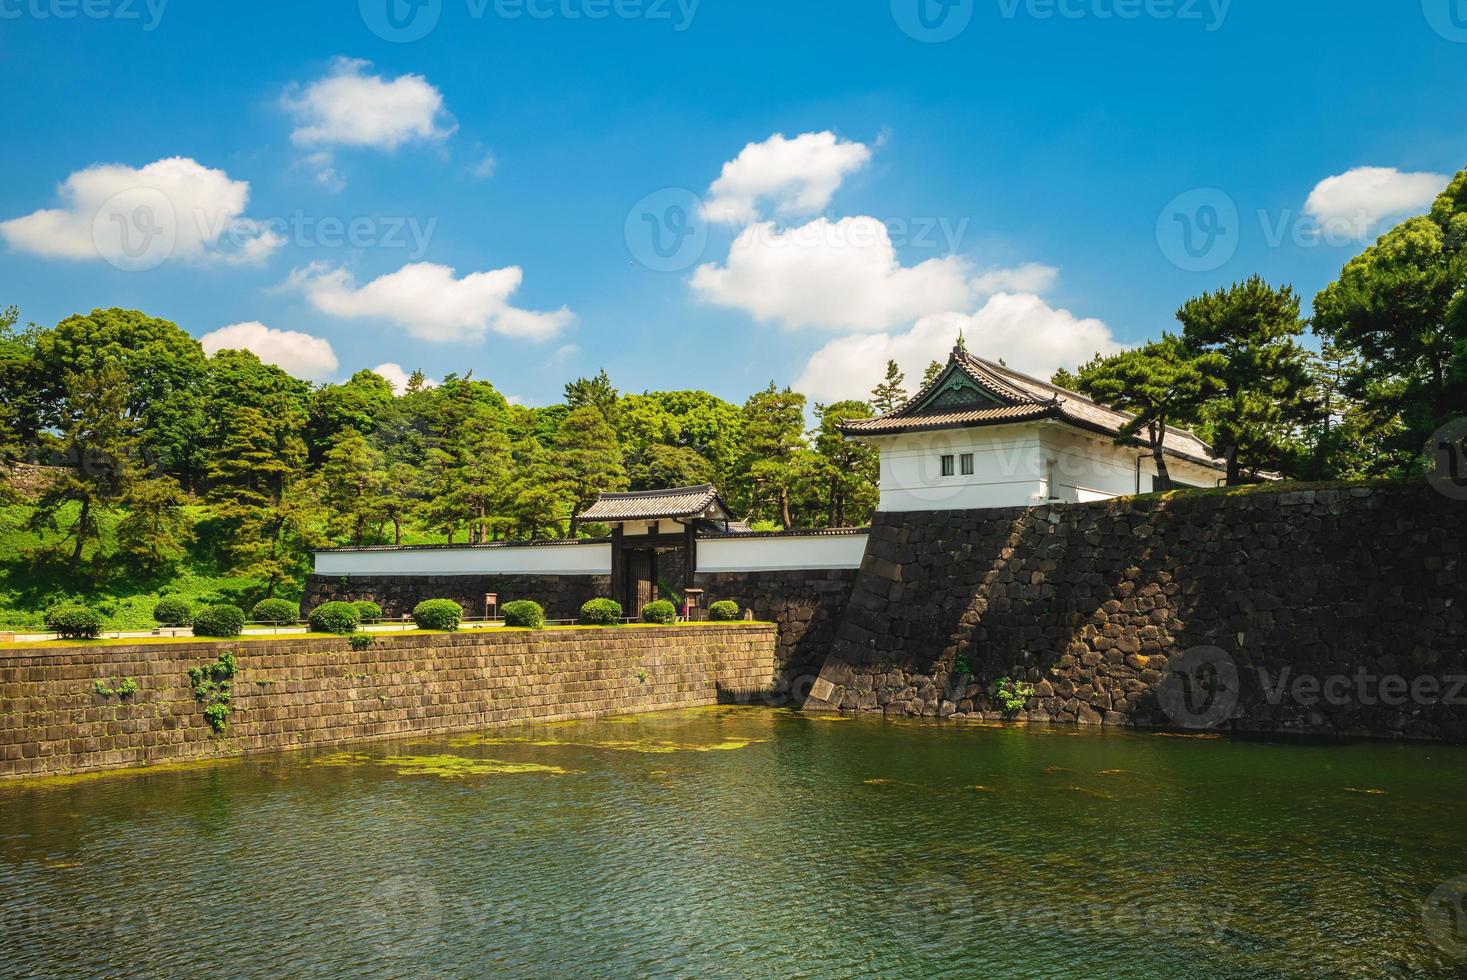 kikyomon poort van het keizerlijk paleis van tokyo in japan foto